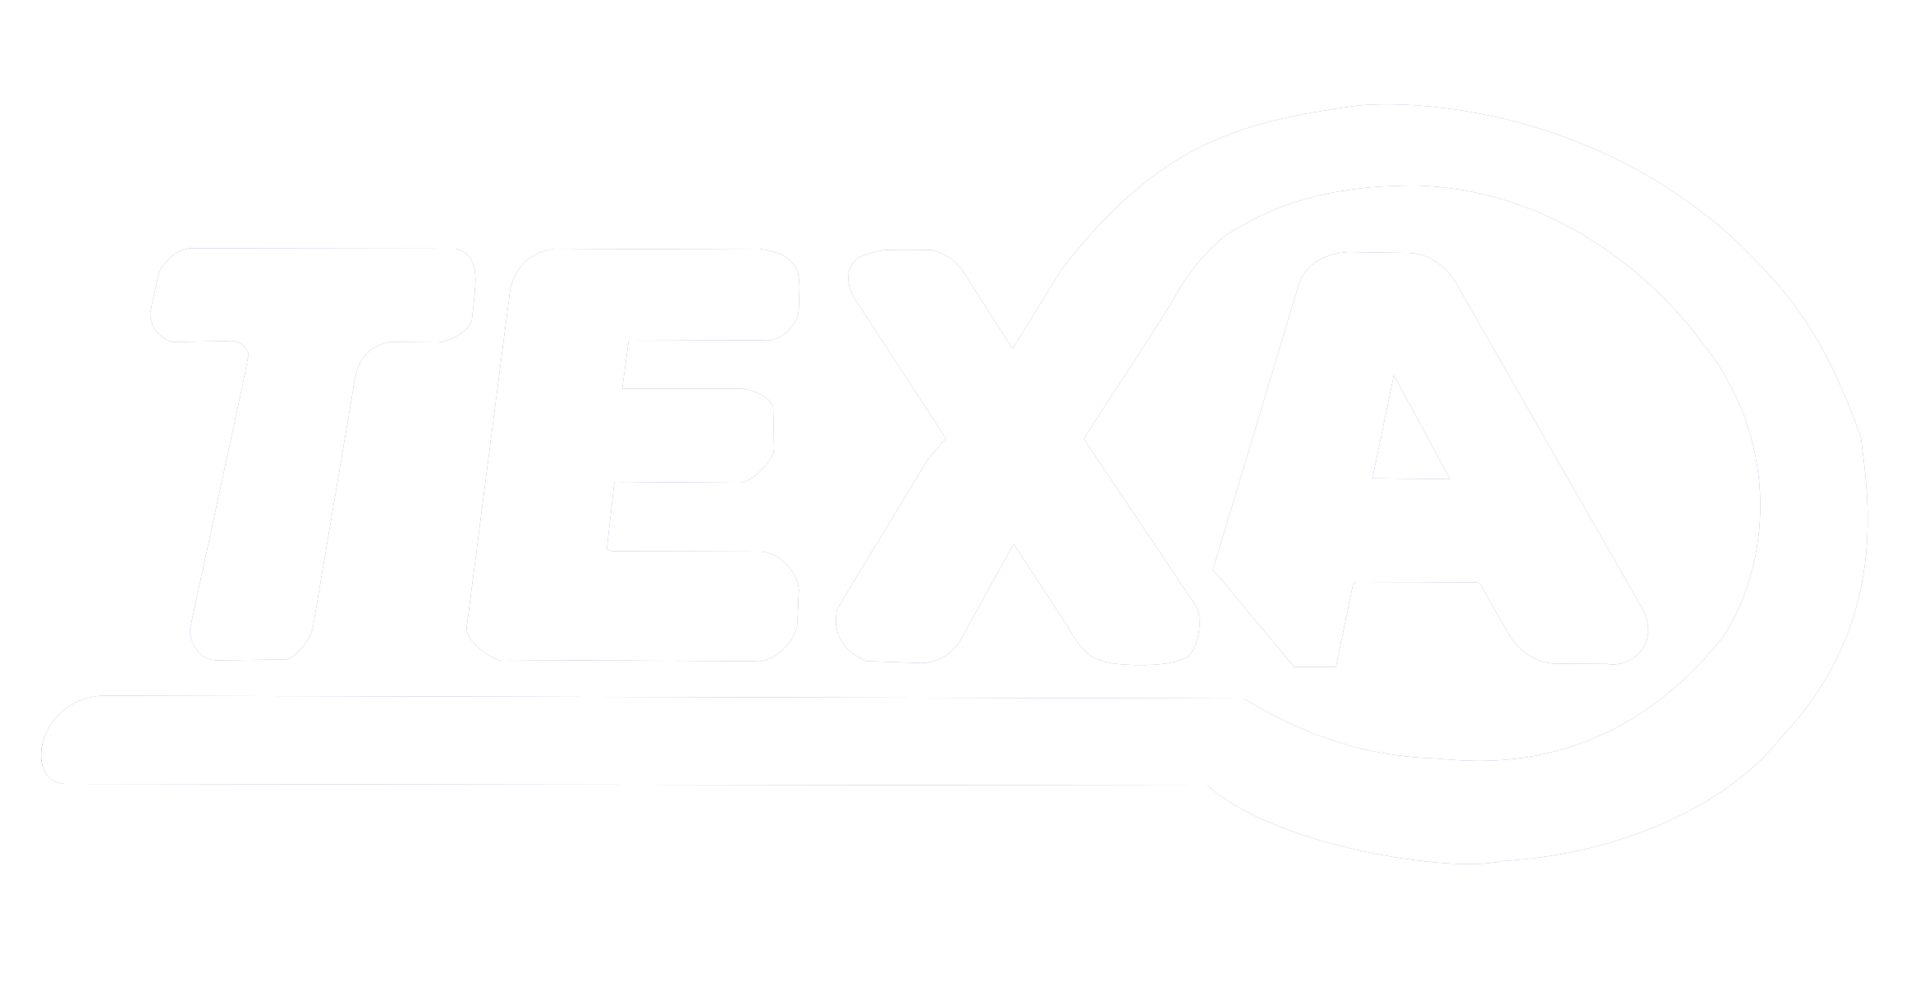 Texa